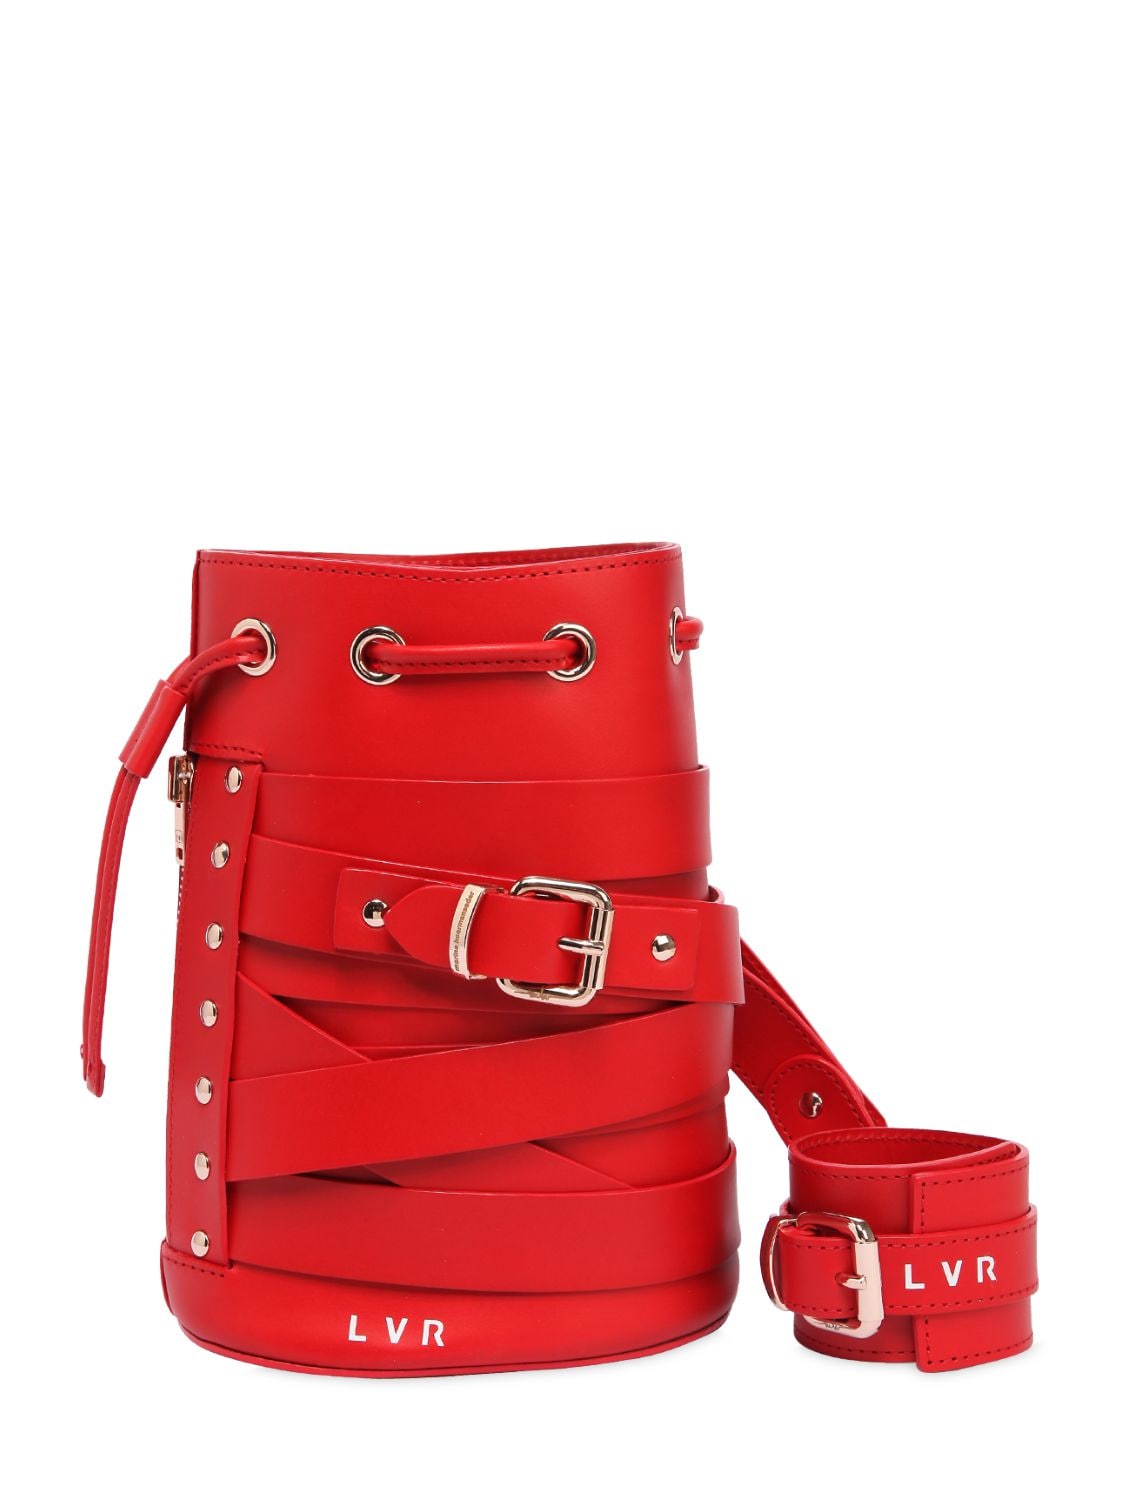 Marina Hoermanseder Lvr Editions Kasper Stripes Leather Bag In Red